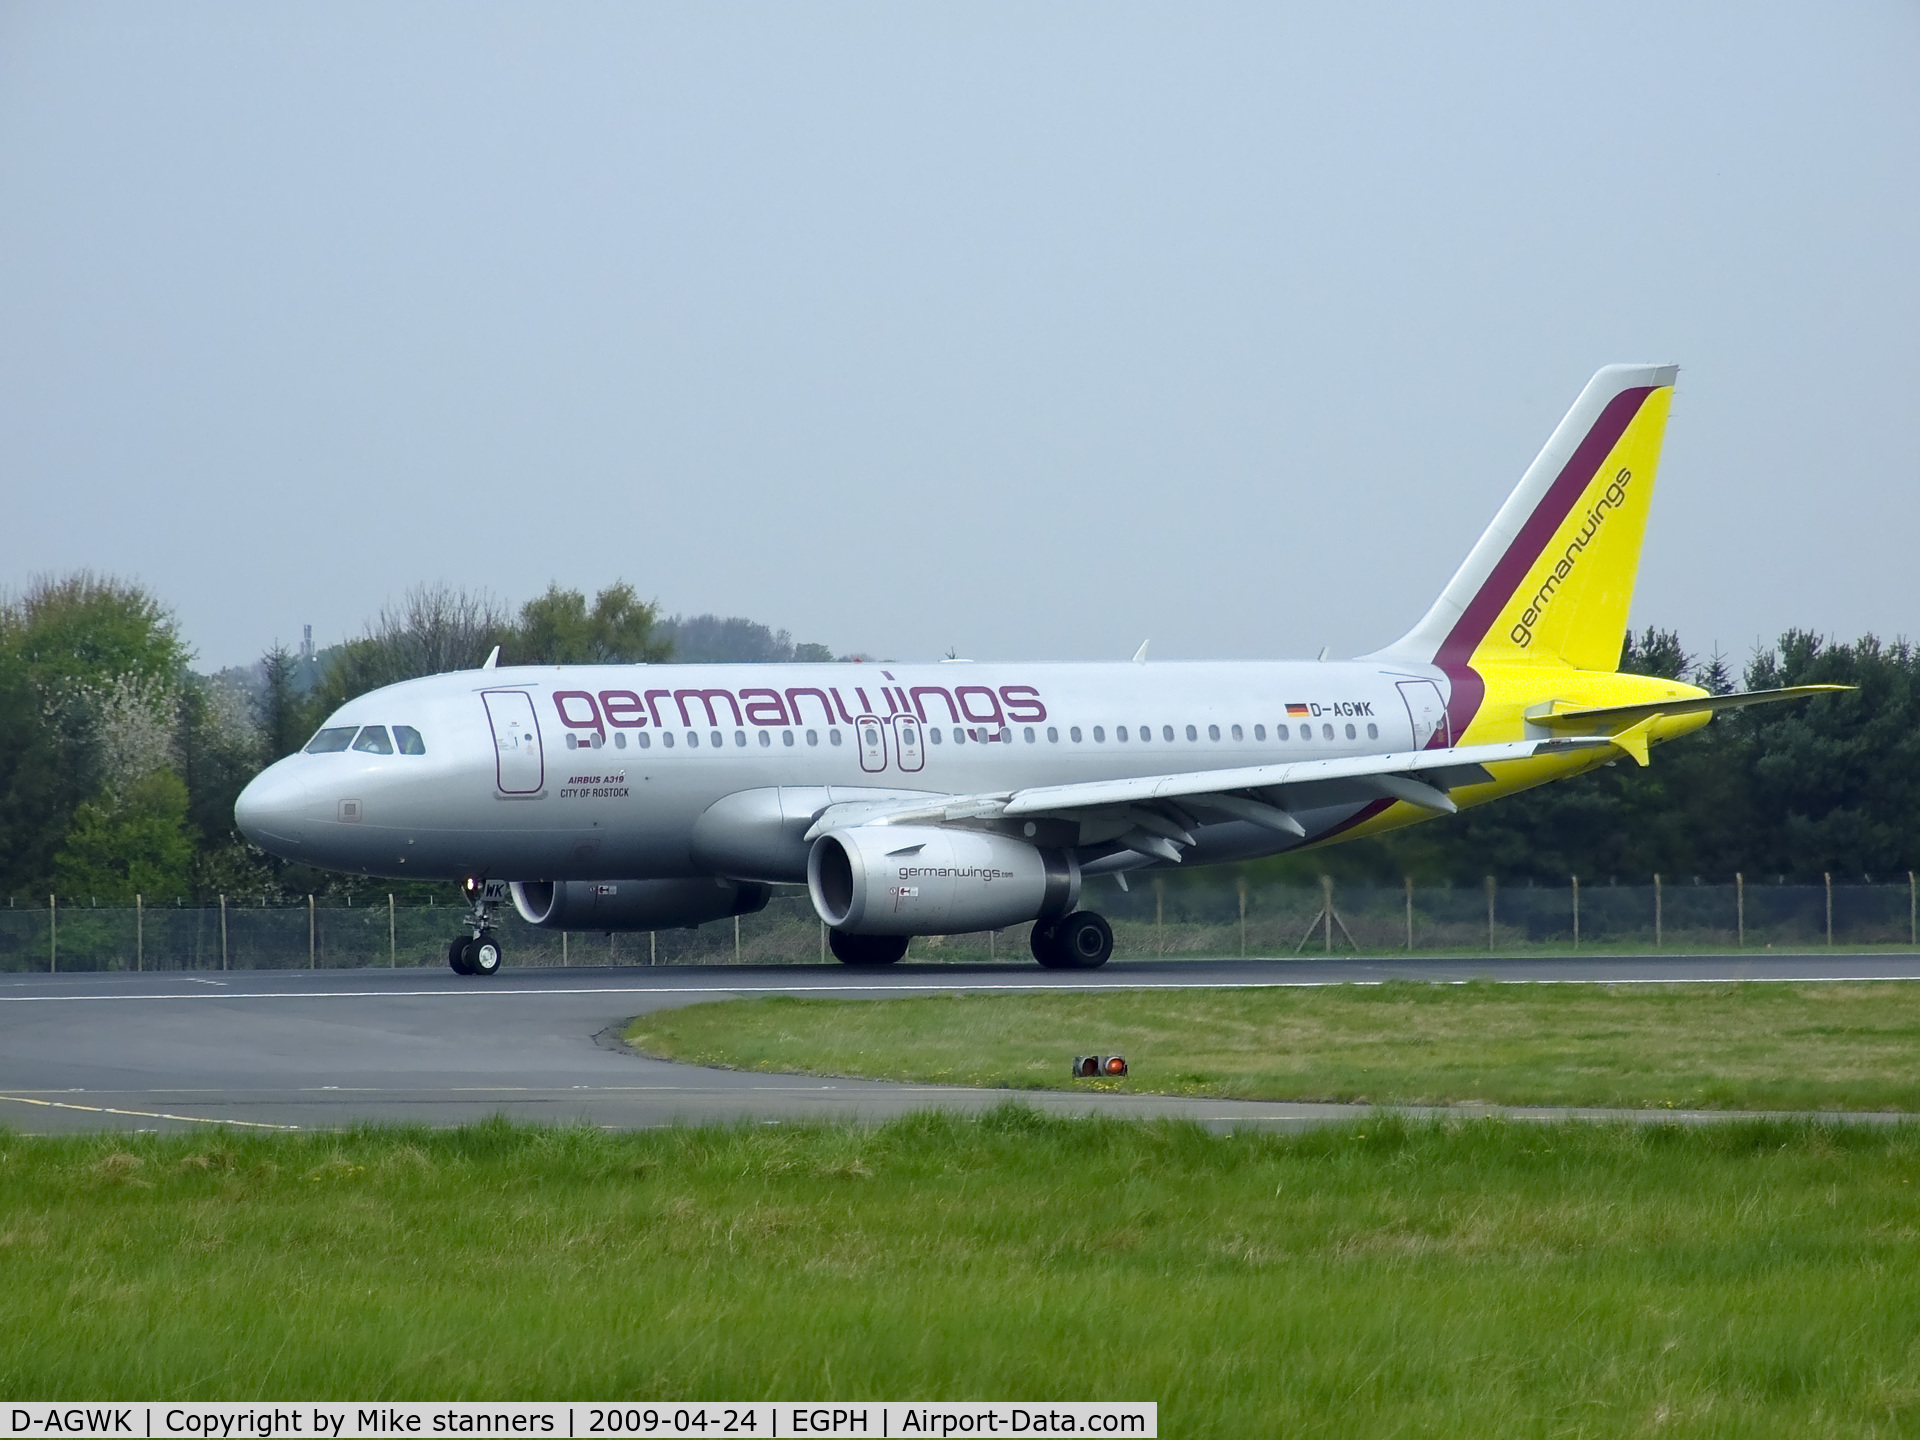 D-AGWK, 2008 Airbus A319-132 C/N 3500, Germanwings arrives on runway 24 at EDI